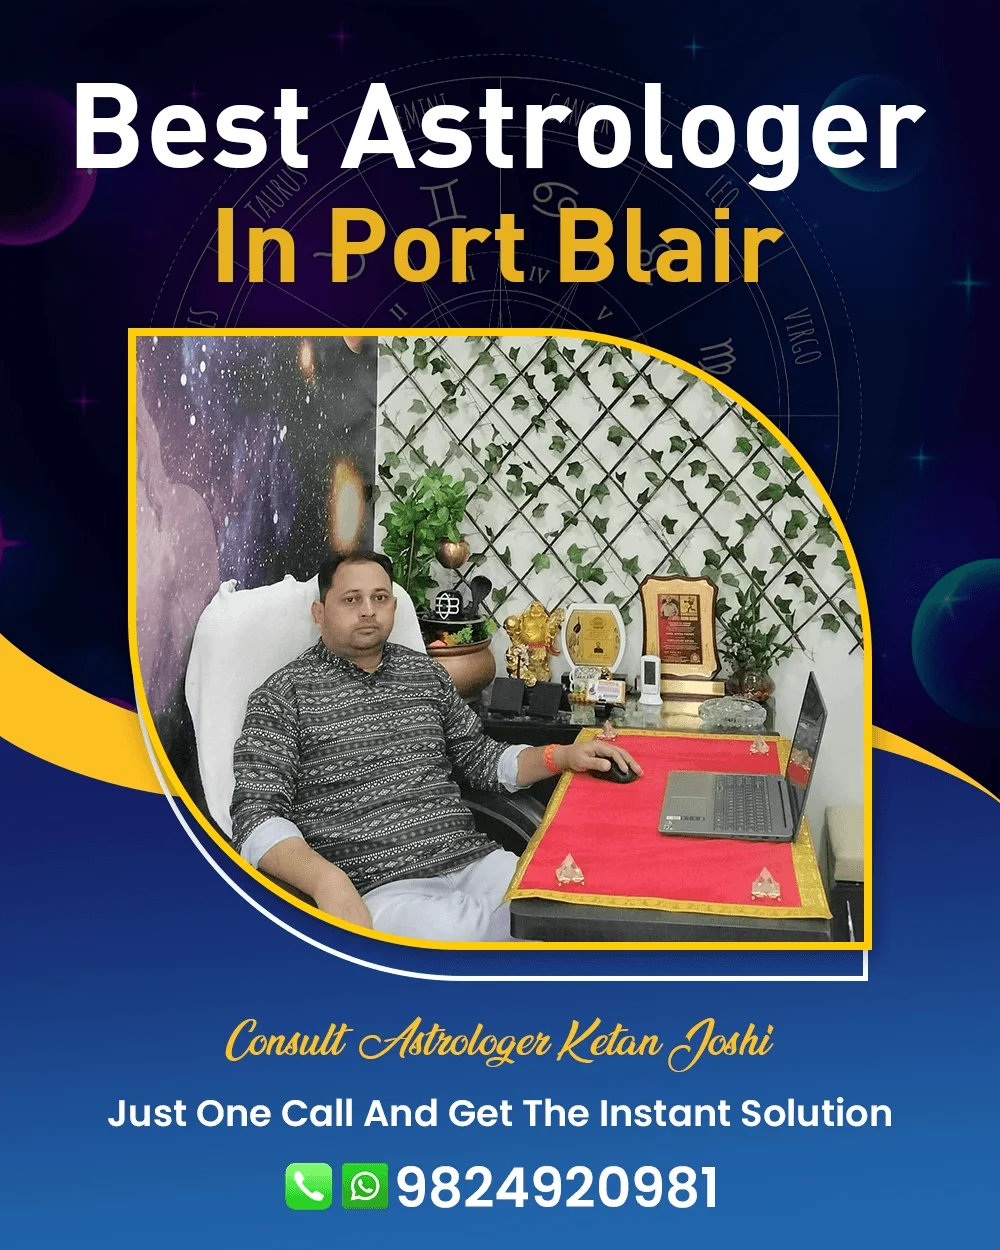 Best Astrologer In Port Blair